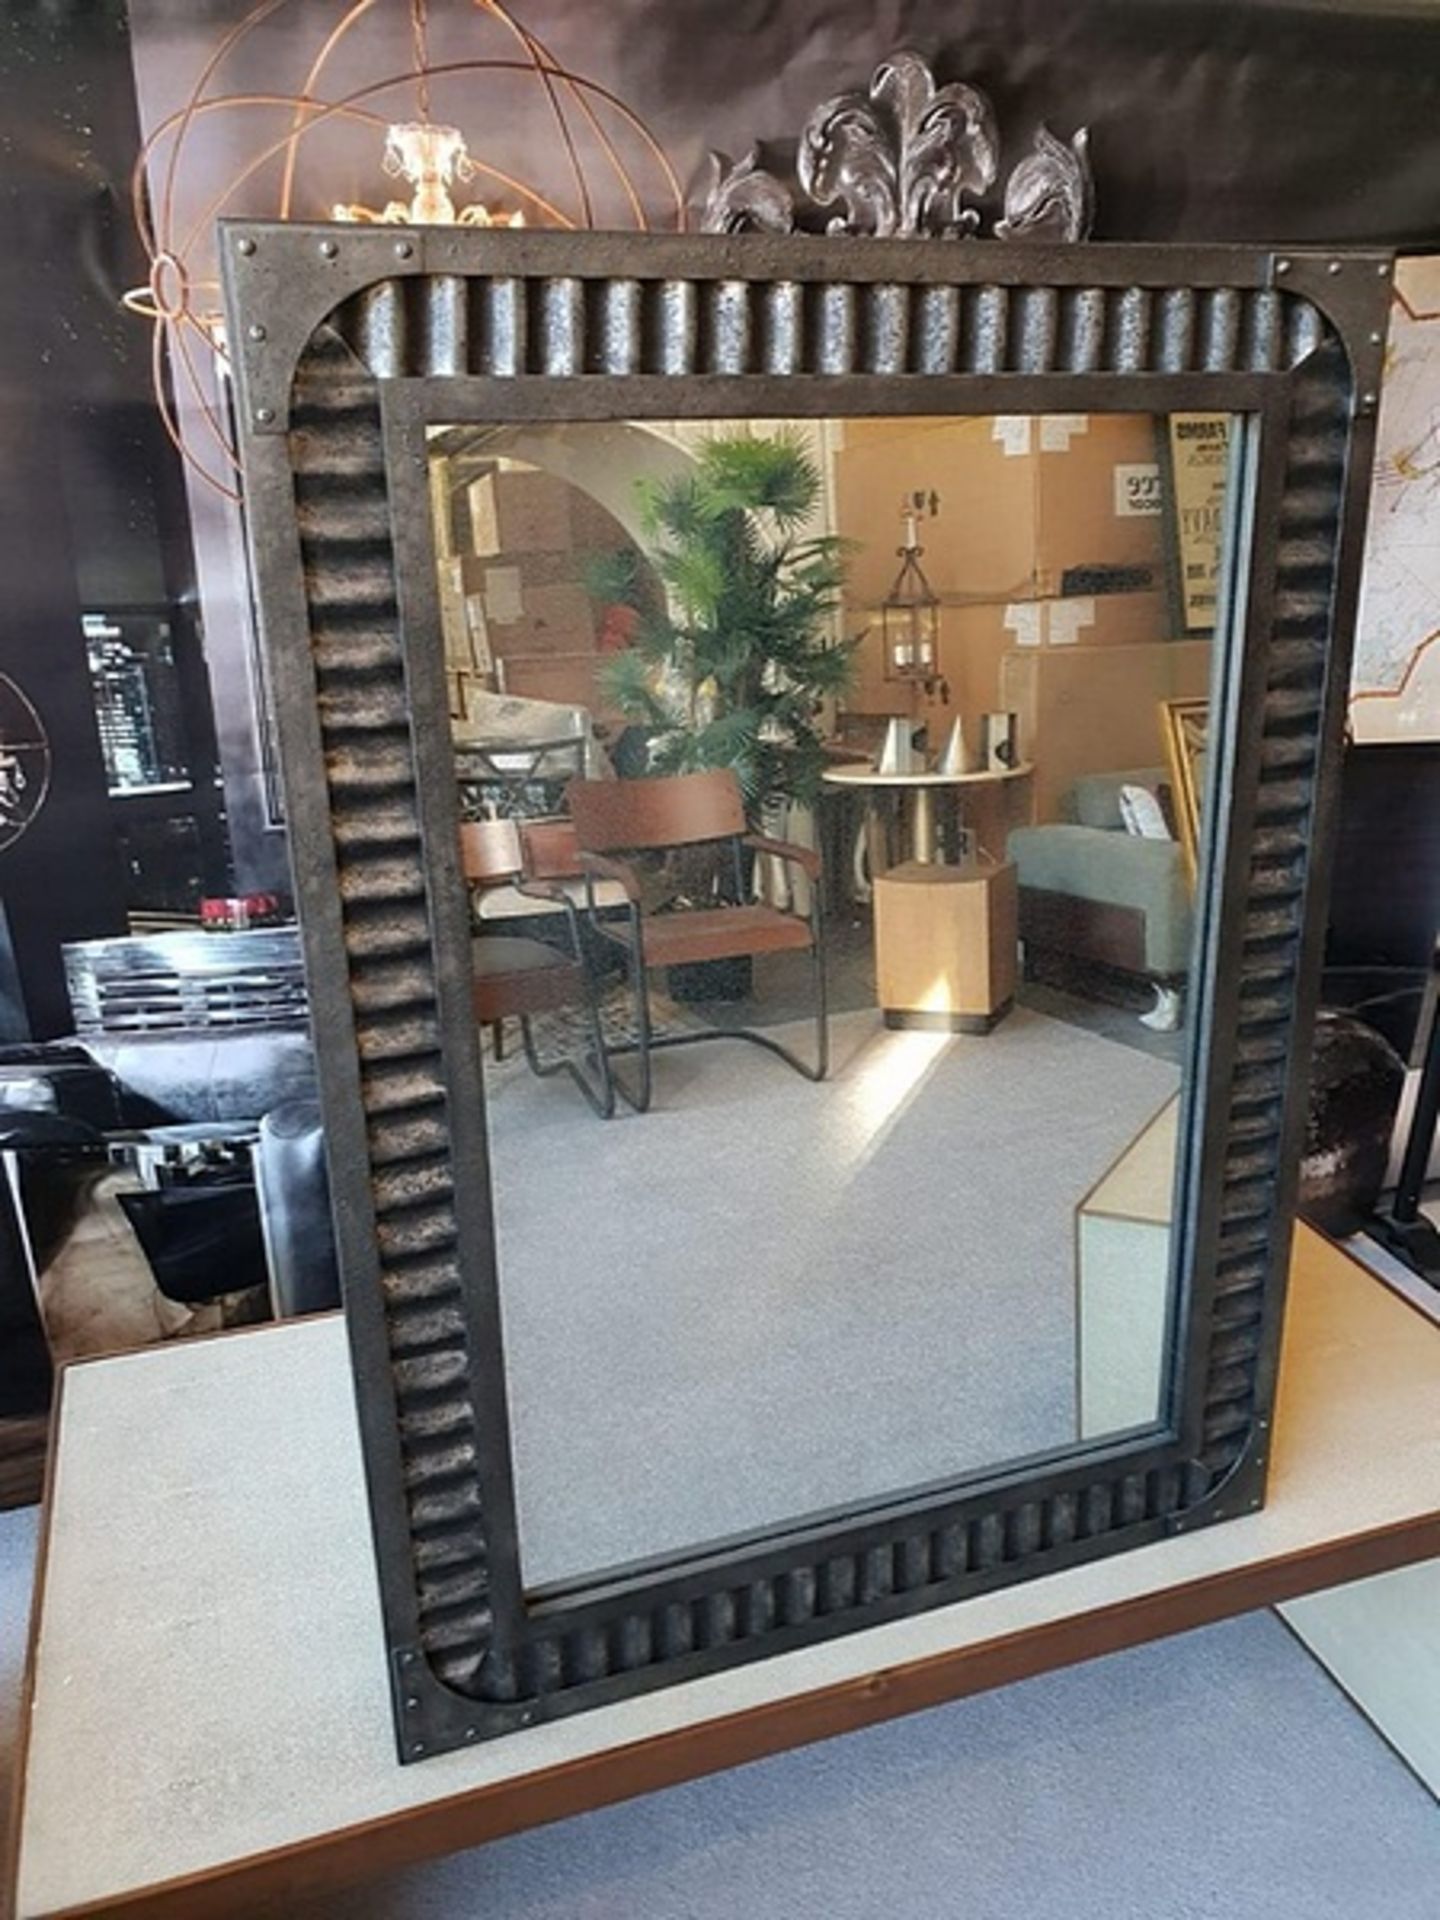 Mirror - Jawa Rectangular Wall Mirror Iron Frame With Corrugated Sheet Metal And Antiqued Mirror